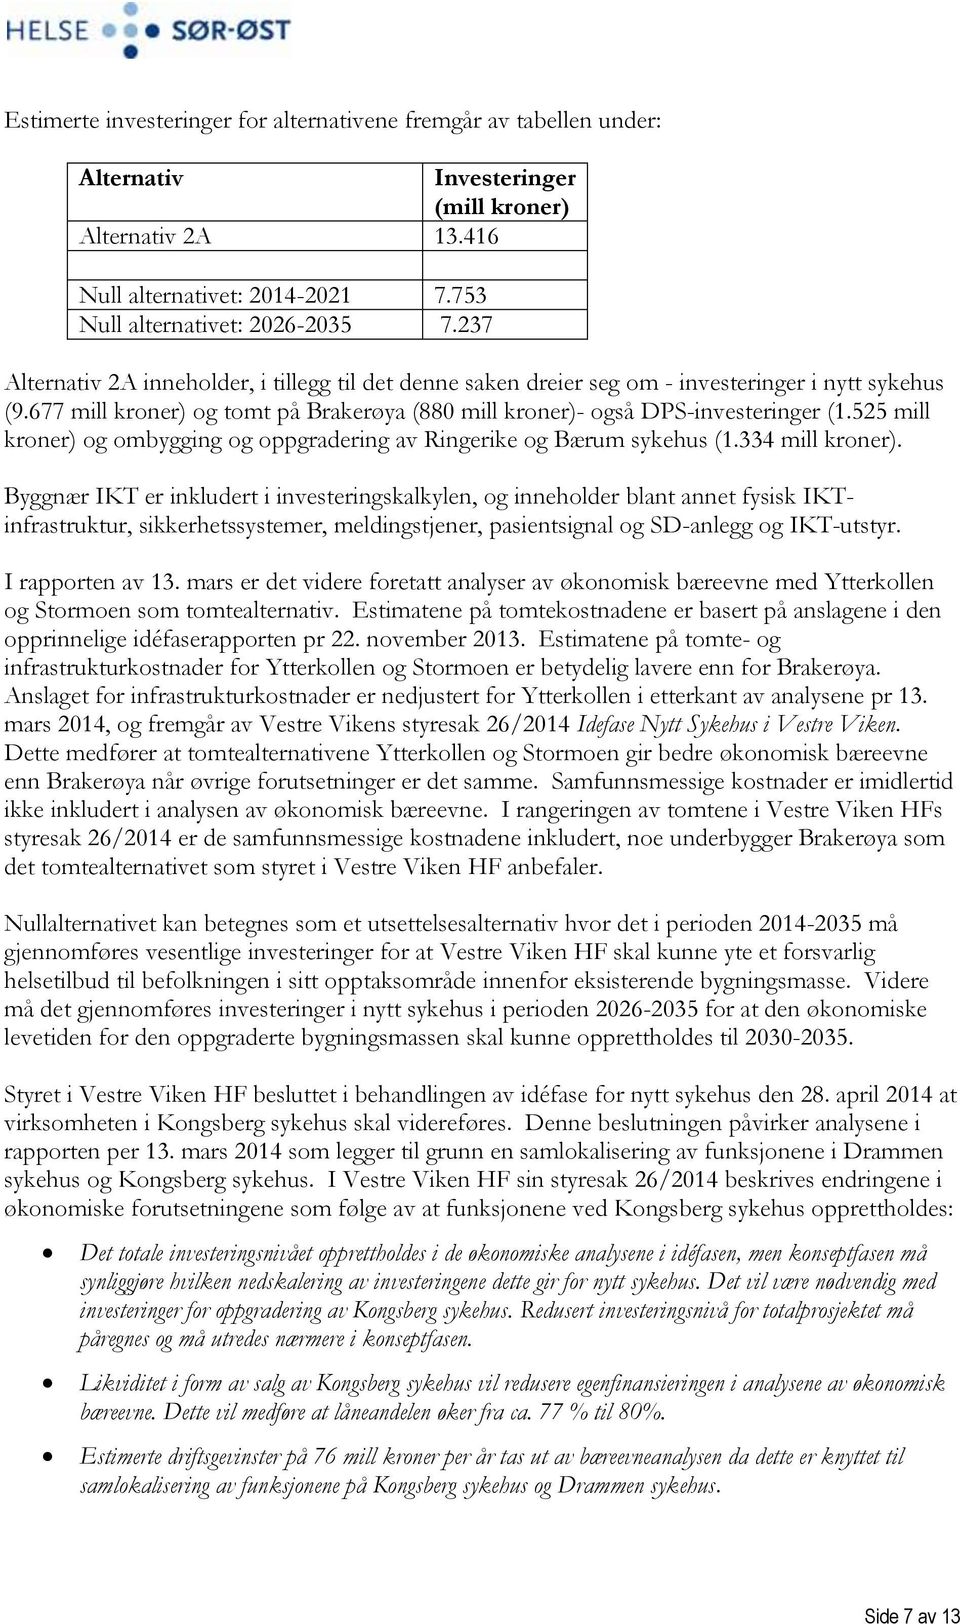 525 mill kroner) og ombygging og oppgradering av Ringerike og Bærum sykehus (1.334 mill kroner).